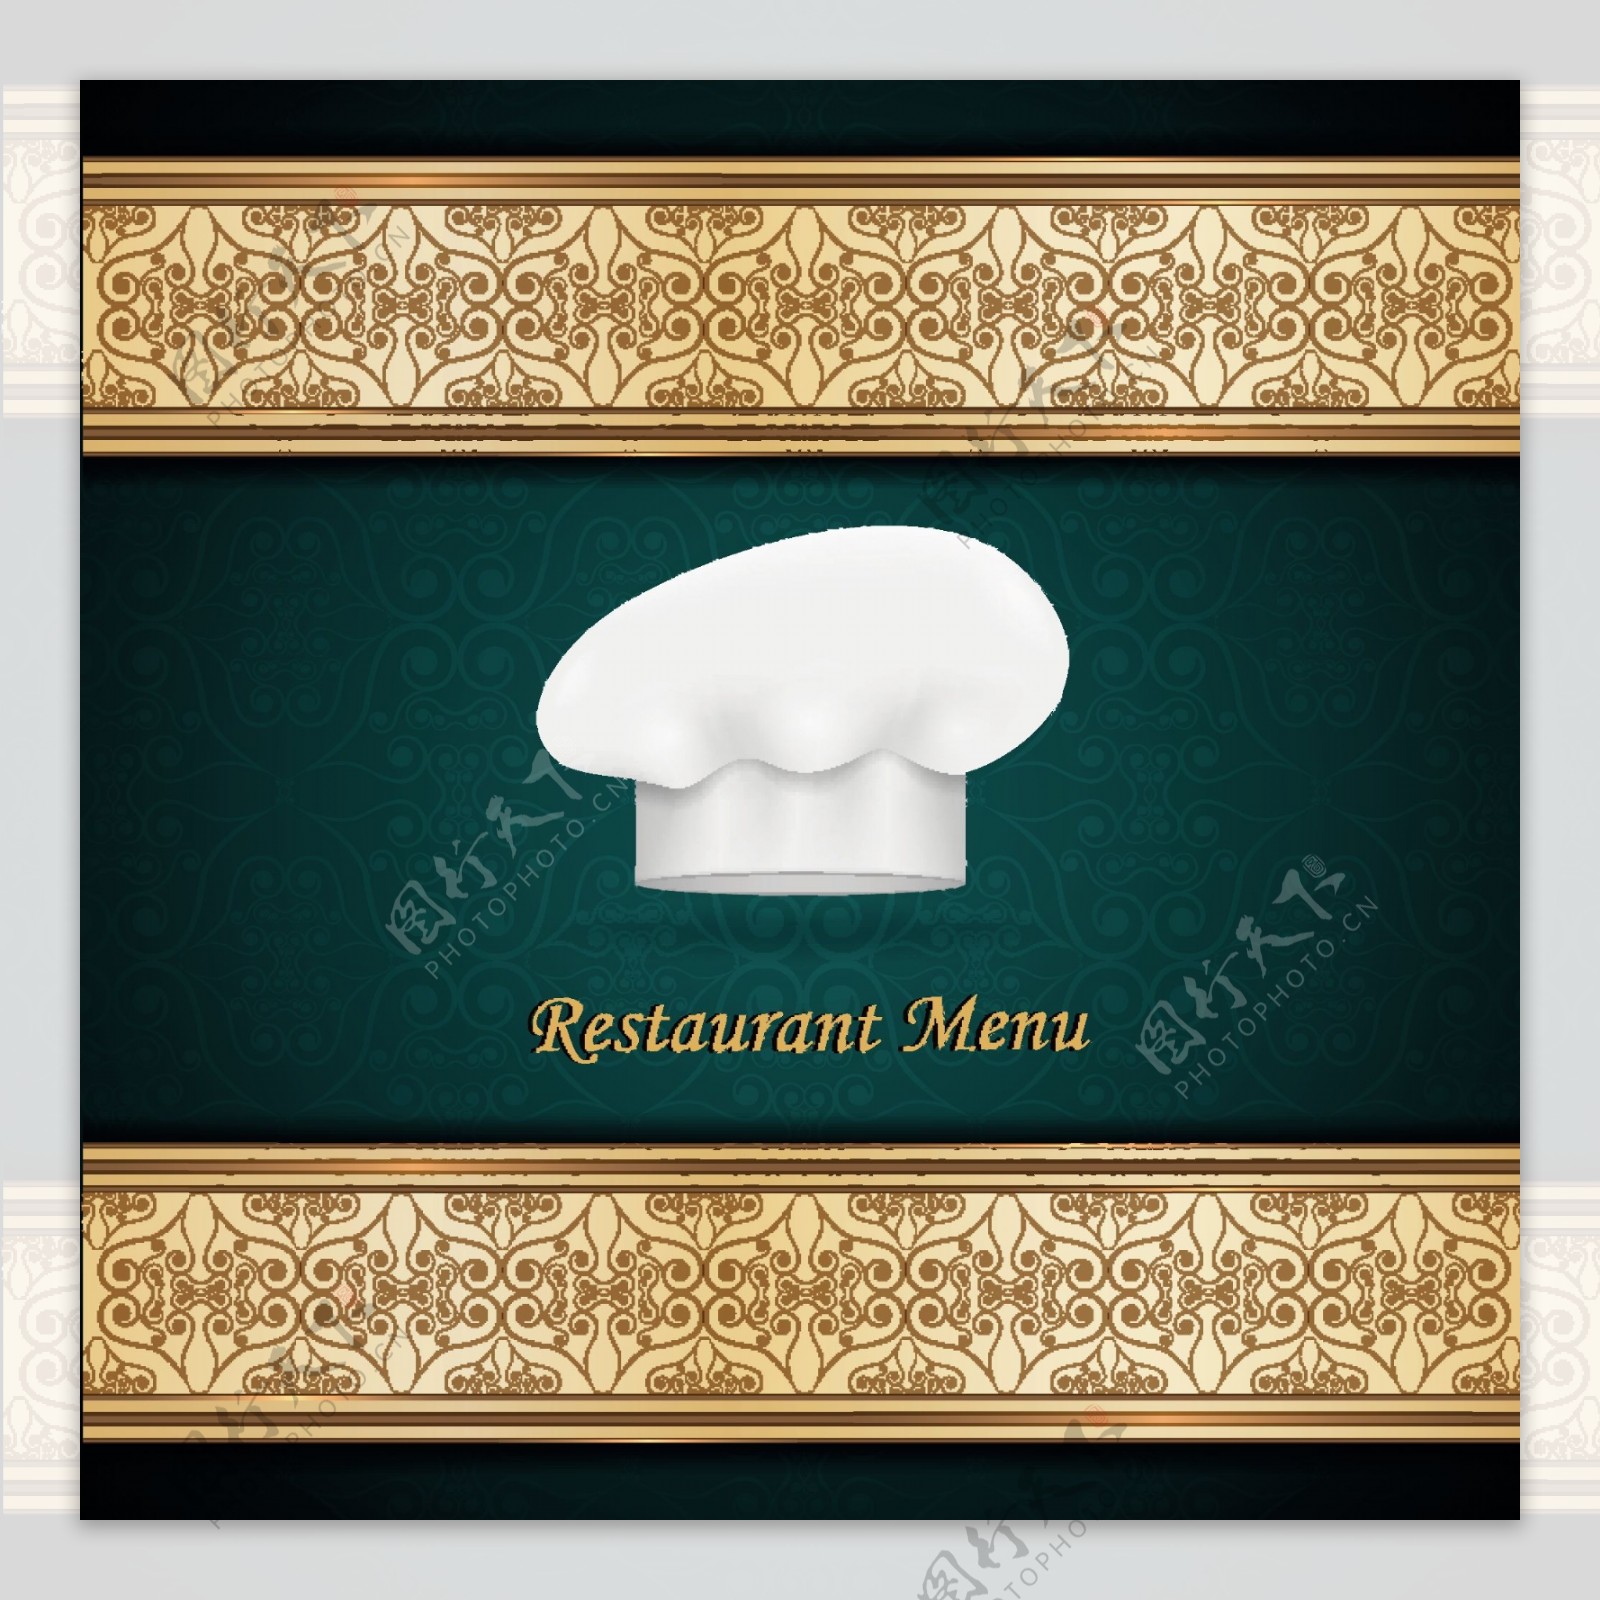 厨师的帽子和餐馆的菜单封面设计矢量图02